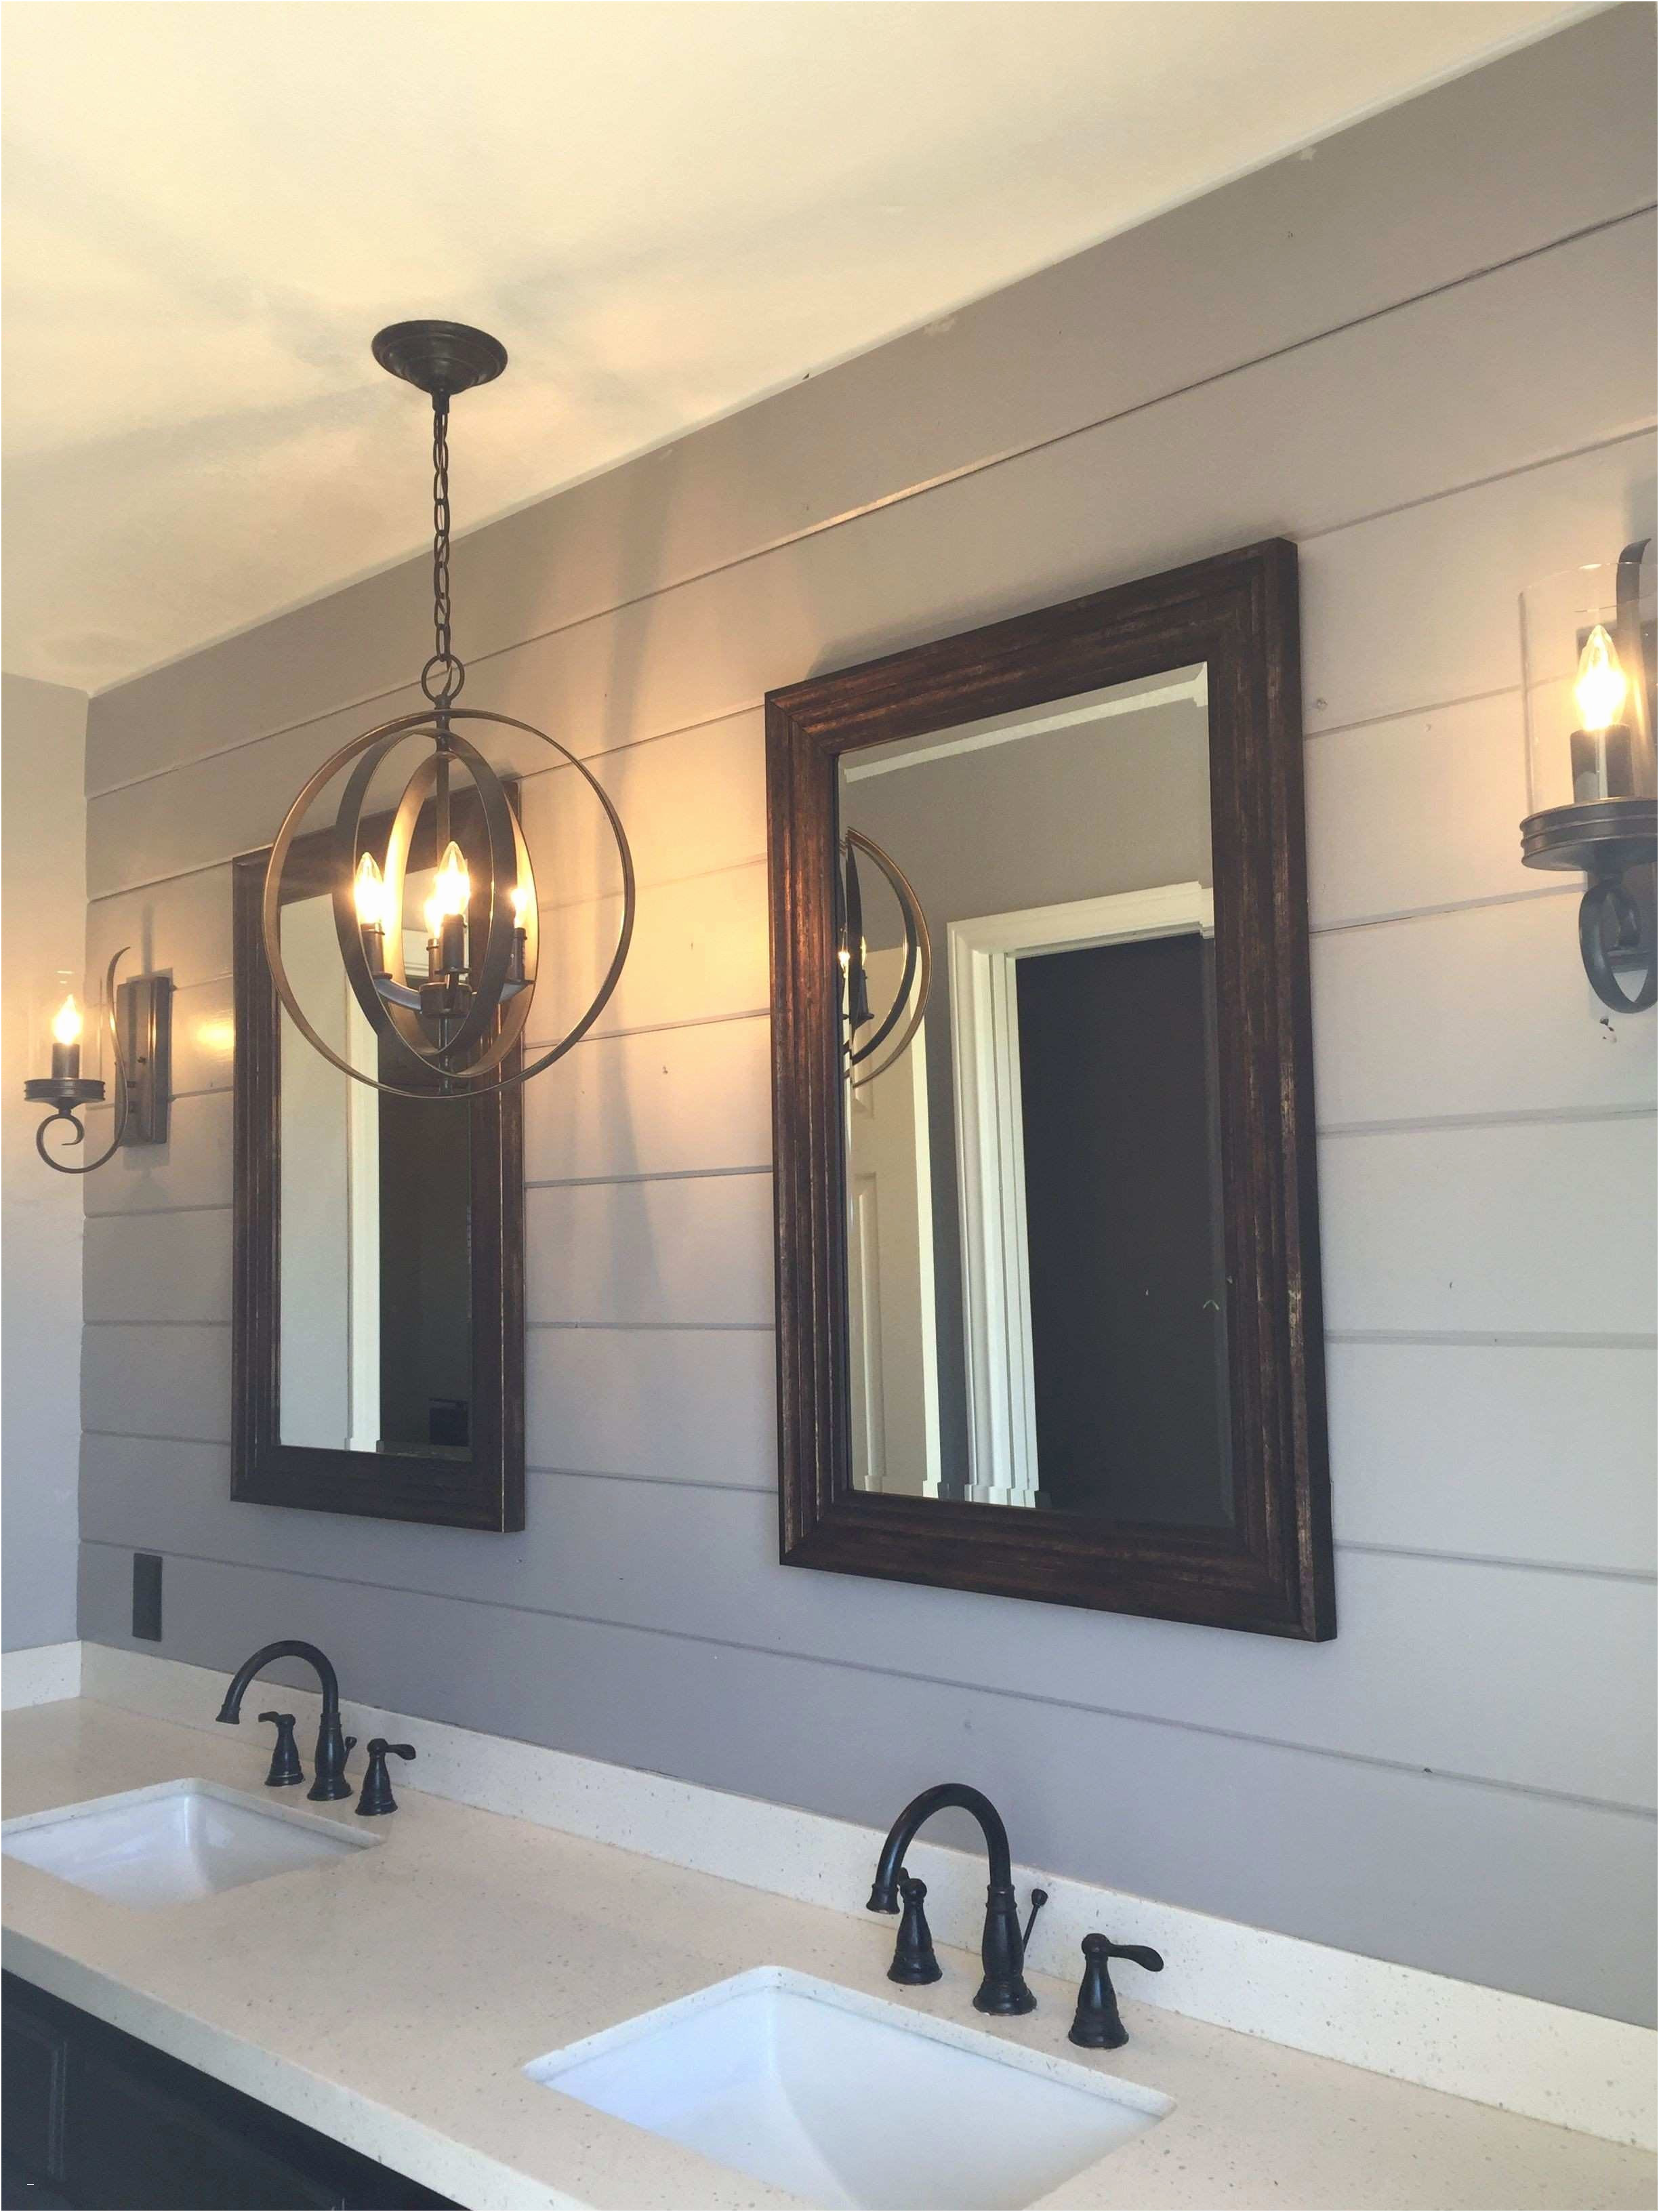 New Installing Bathroom Light Fixture Over Mirror